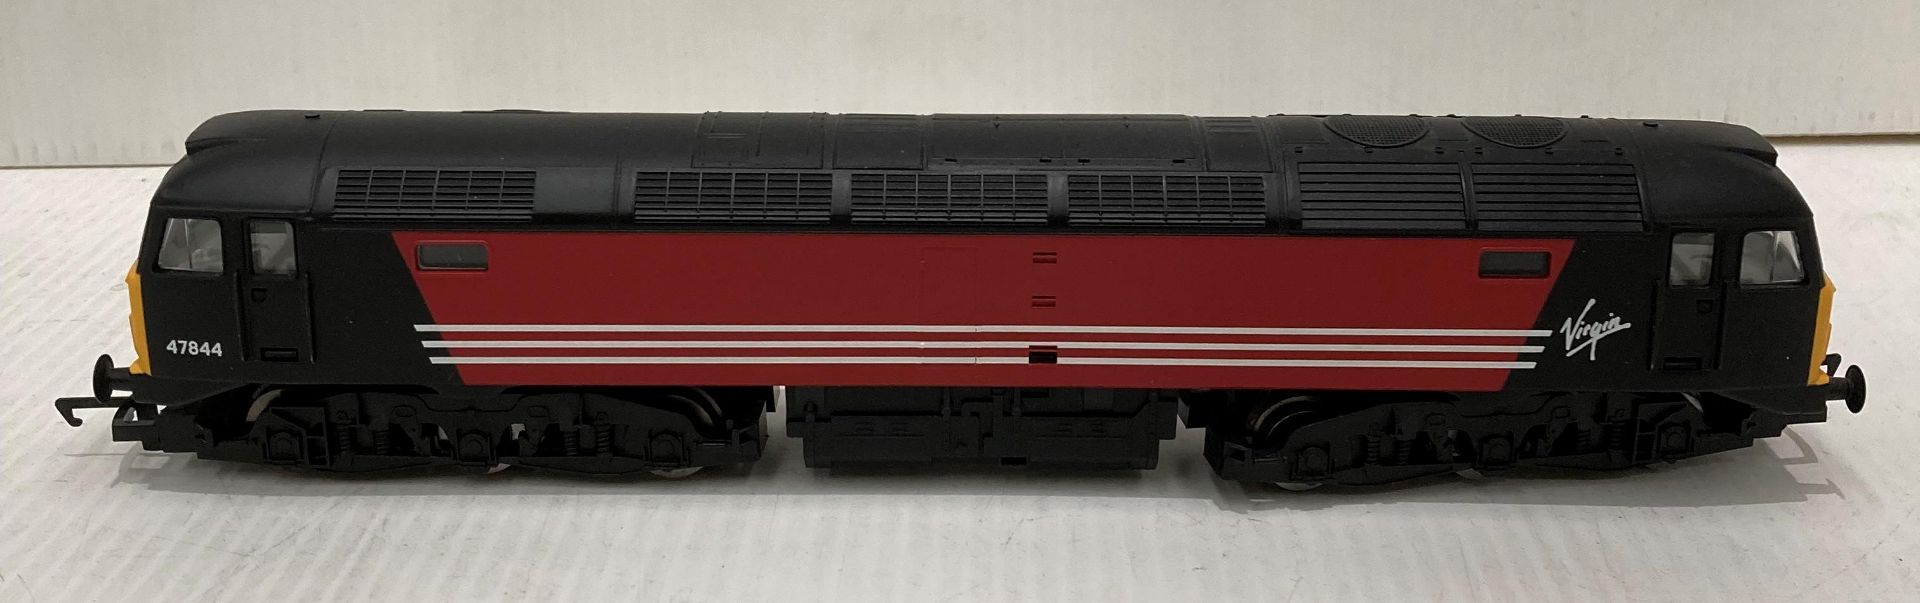 Hornby Virgin No: 47844 diesel locomotive "OO" gauge and a Mainline Intercity 827 Zulu Warship - Image 2 of 3